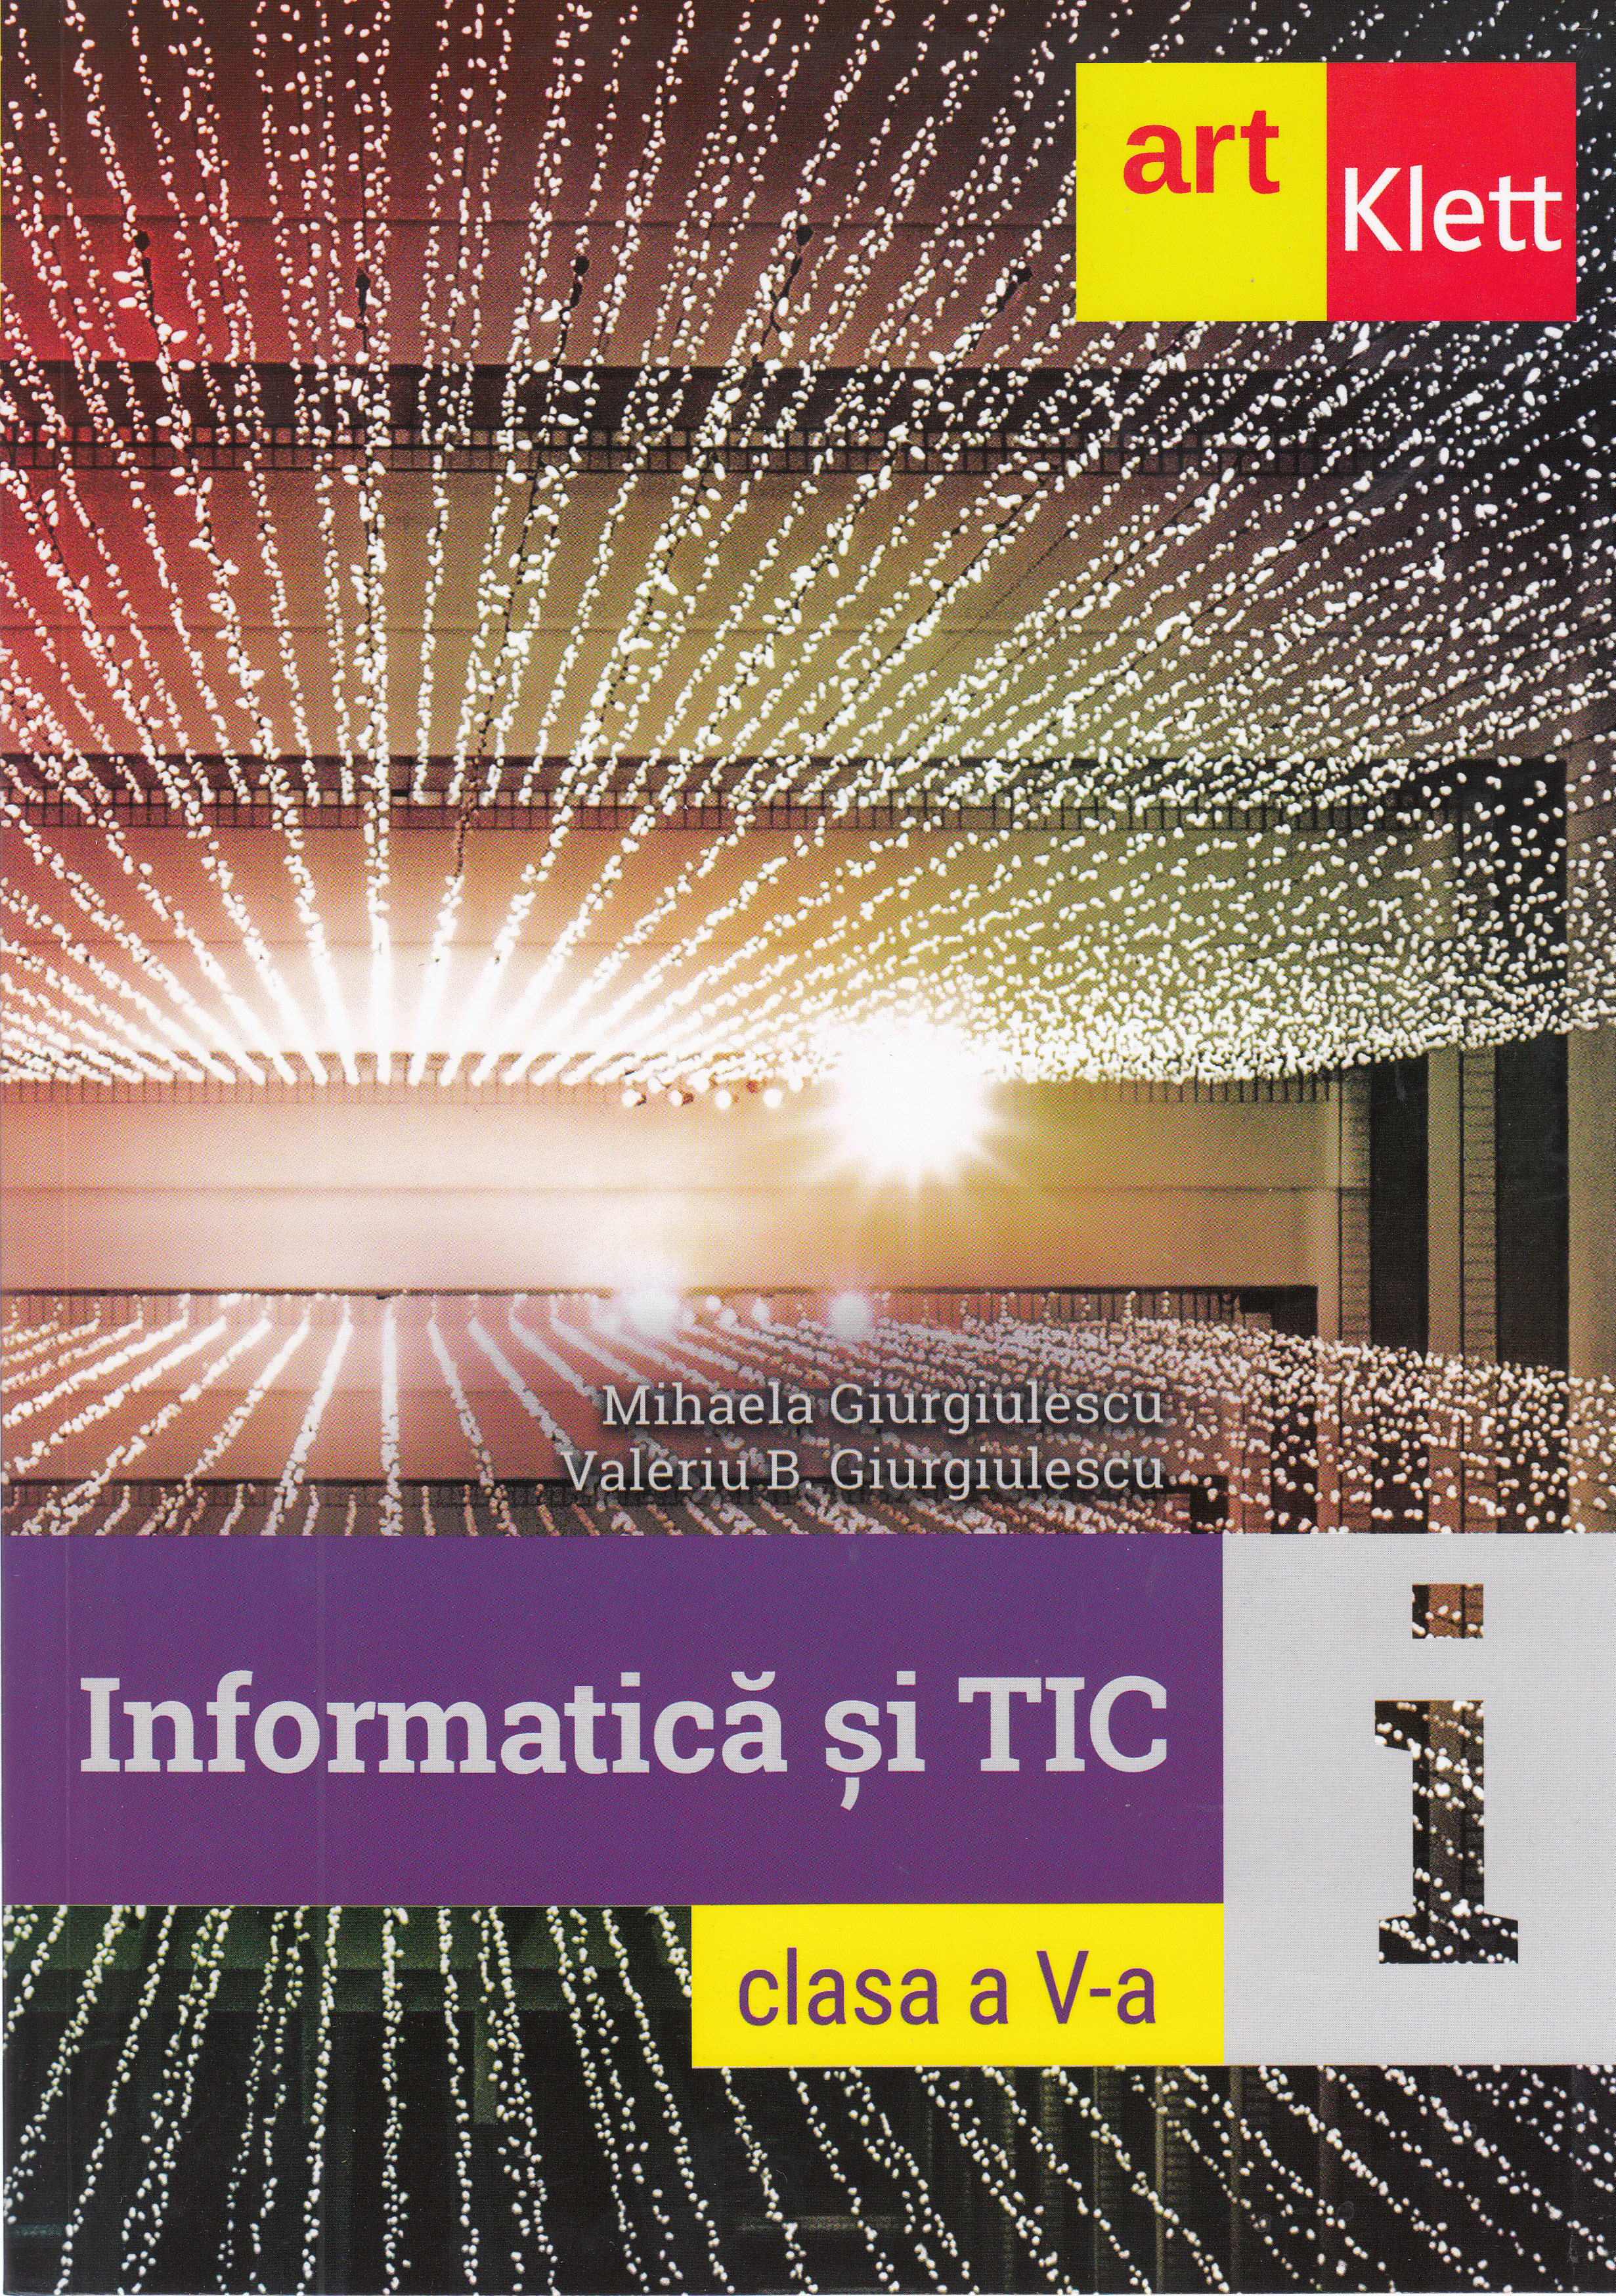 Informatica si TIC - Clasa 5 - Mihaela Giurgiulescu, Valeriu B. Giurgiulescu